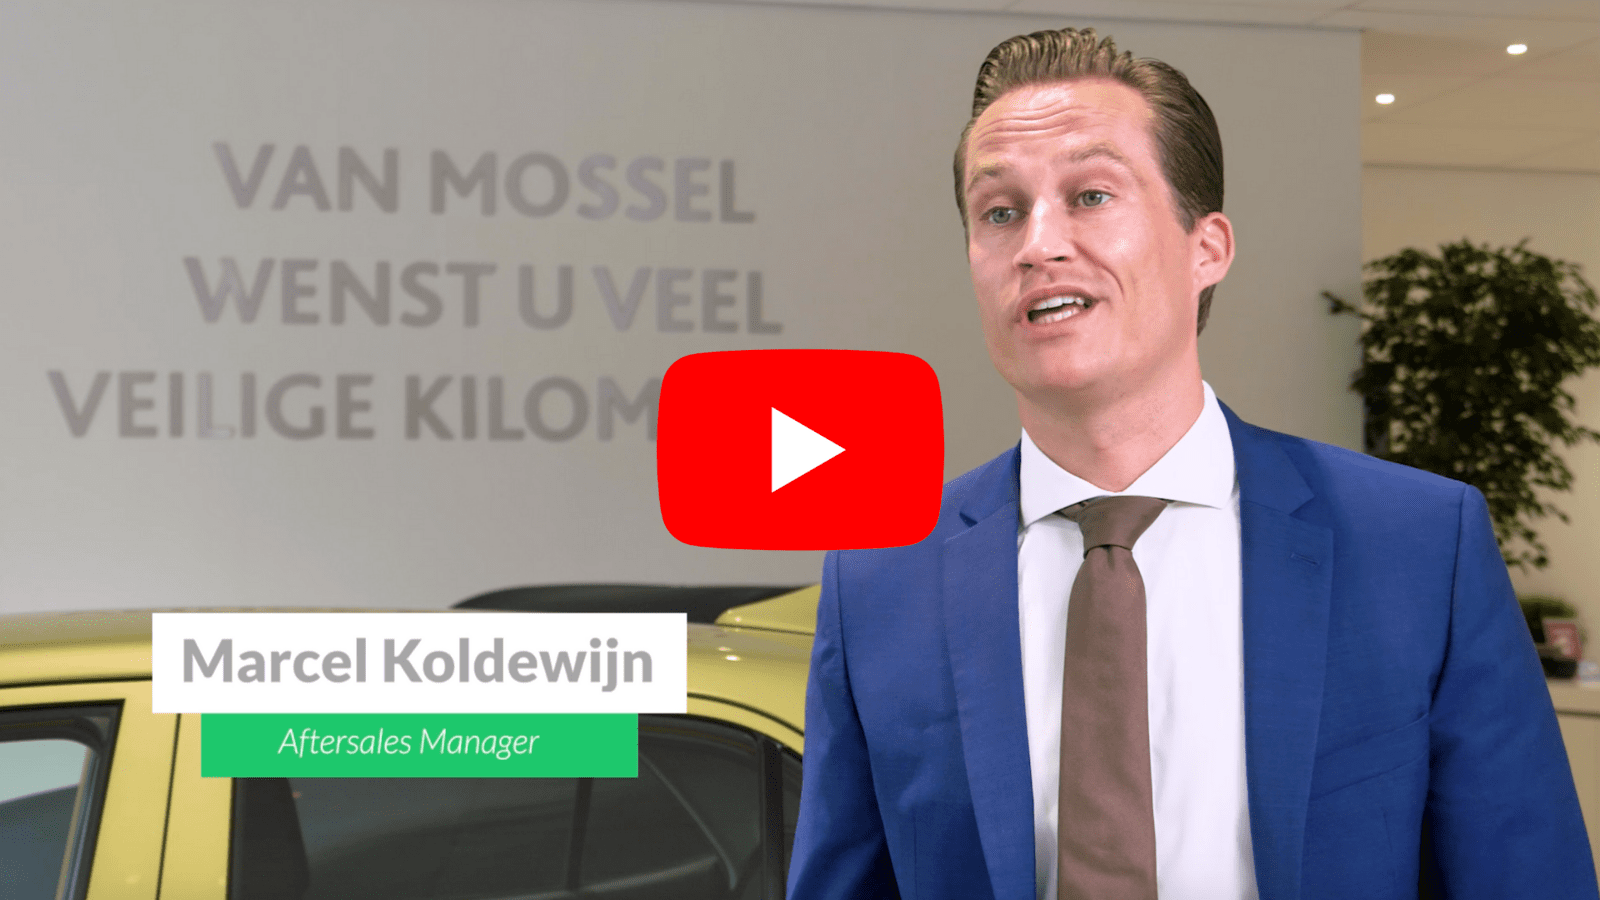 VIDEO: Succesverhaal Van Mossel